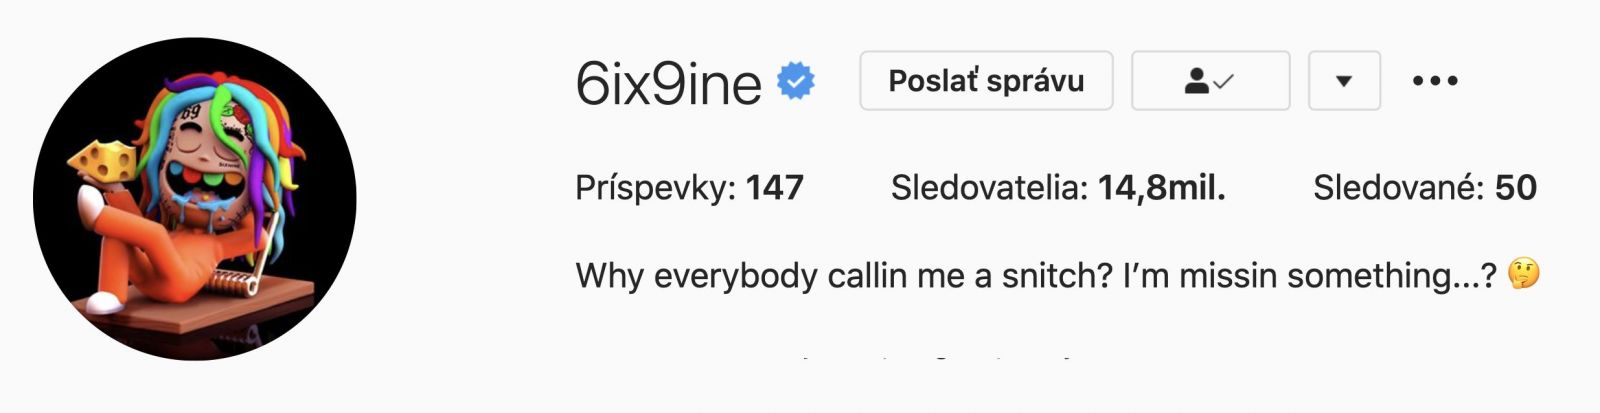 6ix9ine sa na Instagrame pýta, prečo ho všetci nazývajú udavačom. Dostal chuť na pho s Yakshom